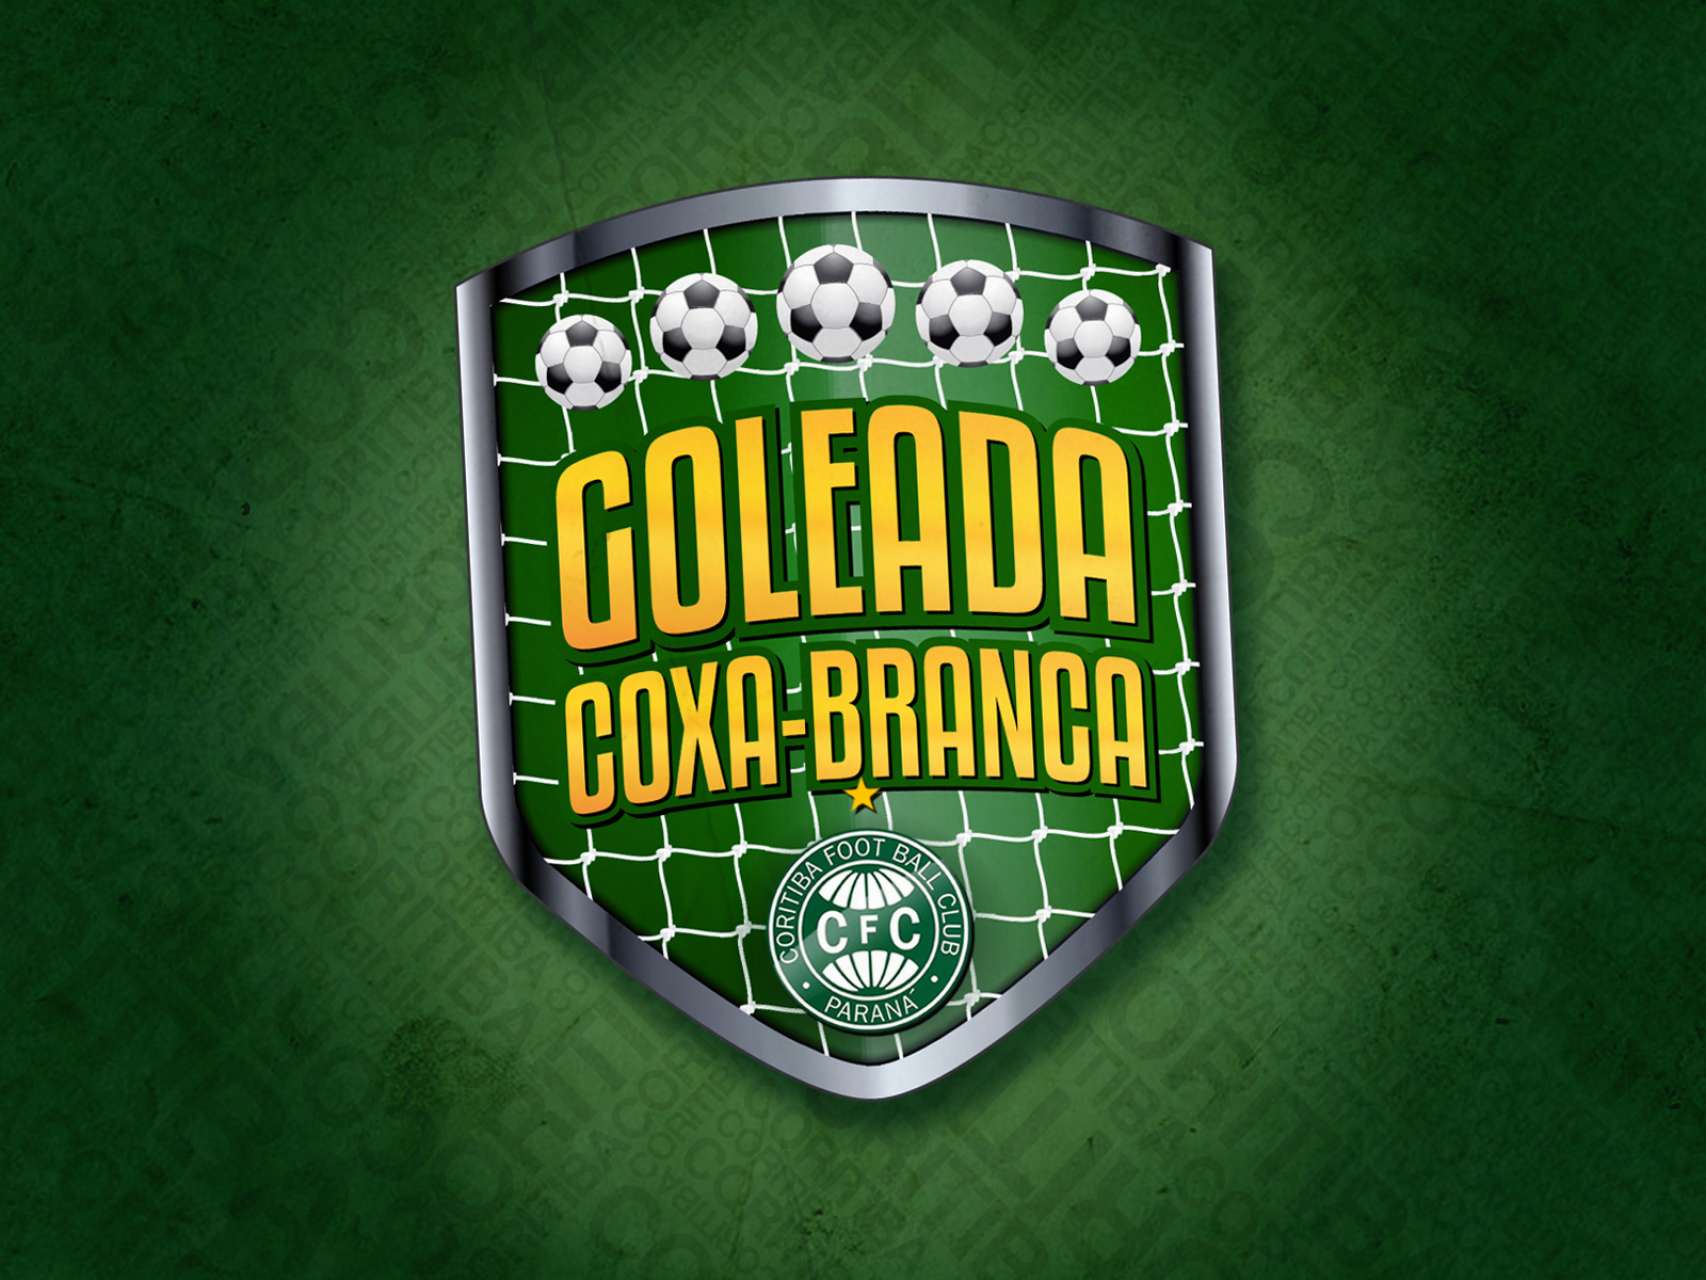 Scio, some gols no Goleada Coxa-Branca!